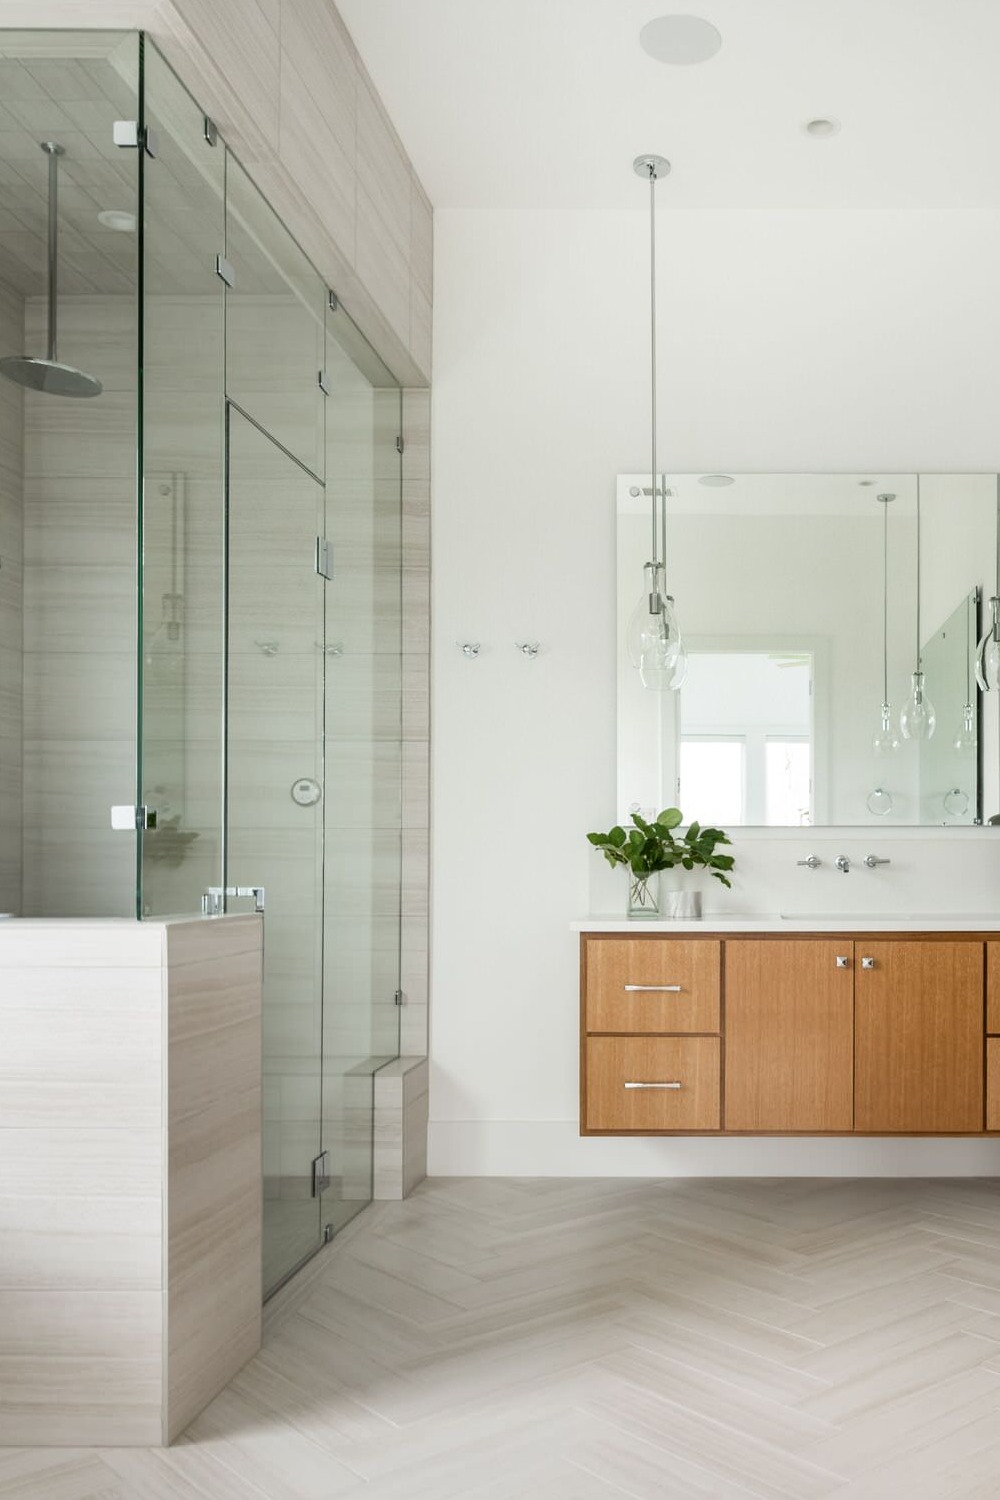 Floating Vanities Bathroom Vanity Sink Wall Shower Tile Modern Floor Countertop Flooring Tiles Space Cabinets